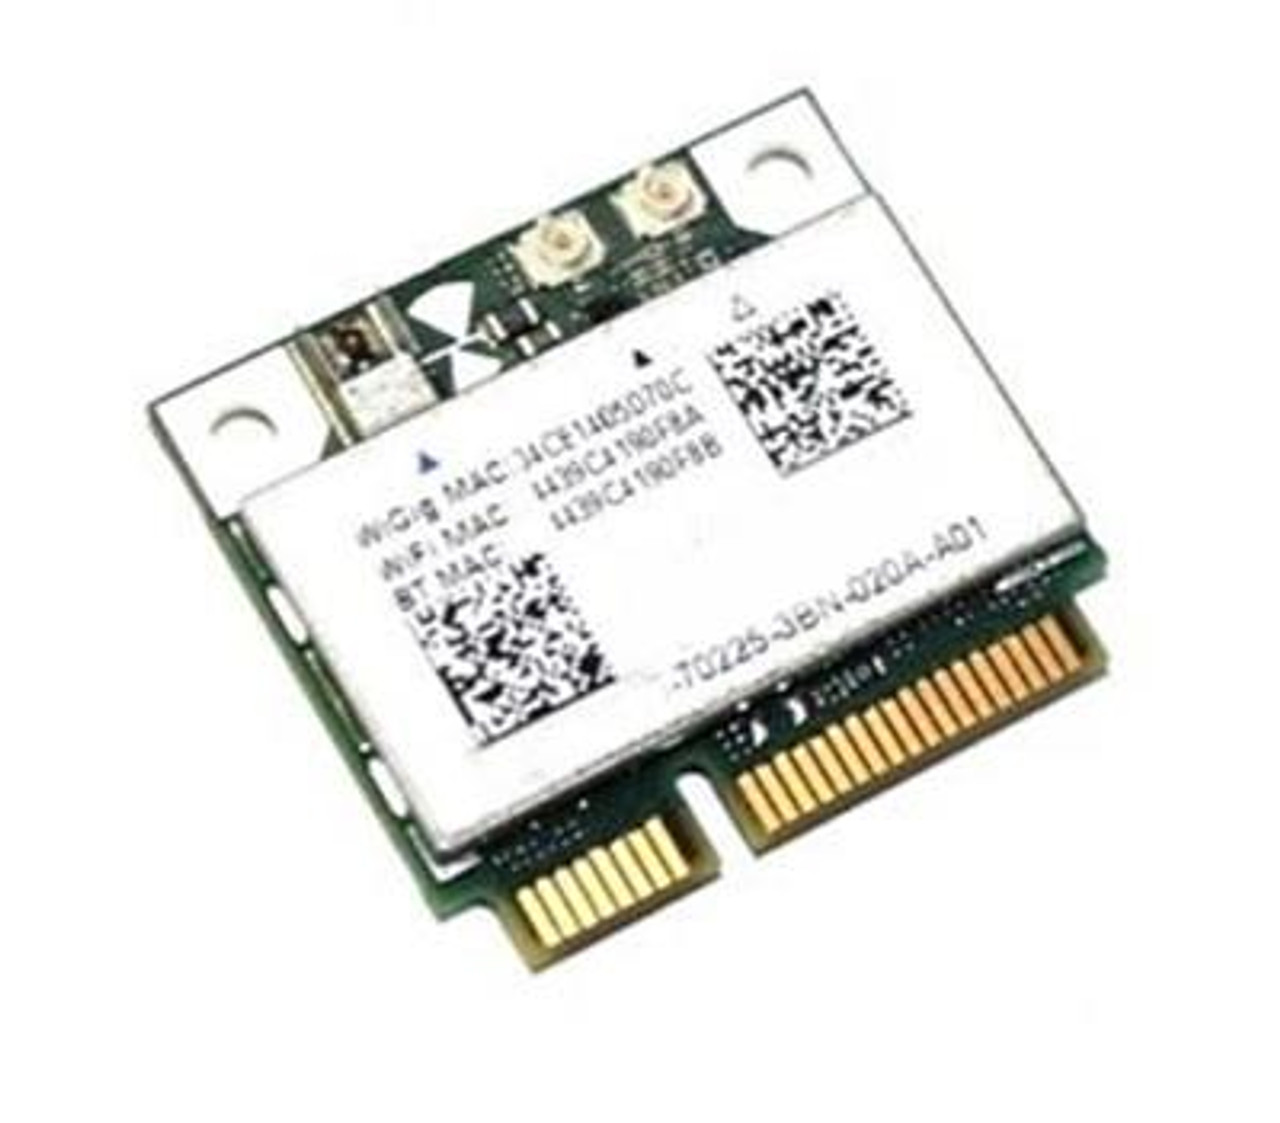 2298X - Dell Wireless 1601 Half Mini Card for Latitude 6430u/ E6430 / XPS 18 (1810) Laptops